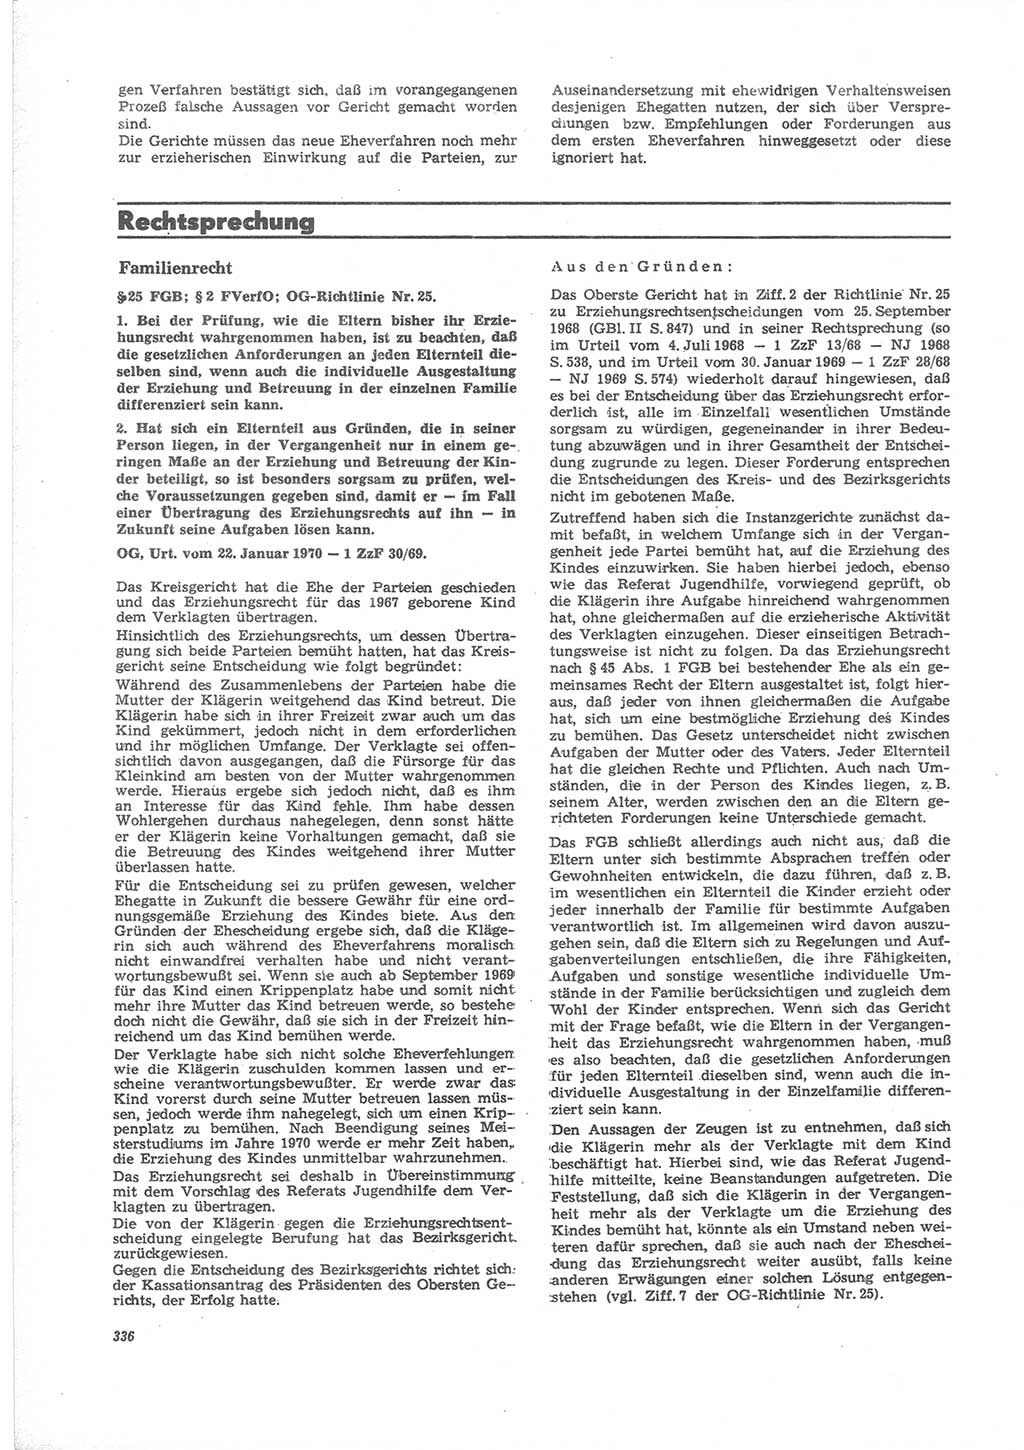 Neue Justiz (NJ), Zeitschrift für Recht und Rechtswissenschaft [Deutsche Demokratische Republik (DDR)], 24. Jahrgang 1970, Seite 336 (NJ DDR 1970, S. 336)